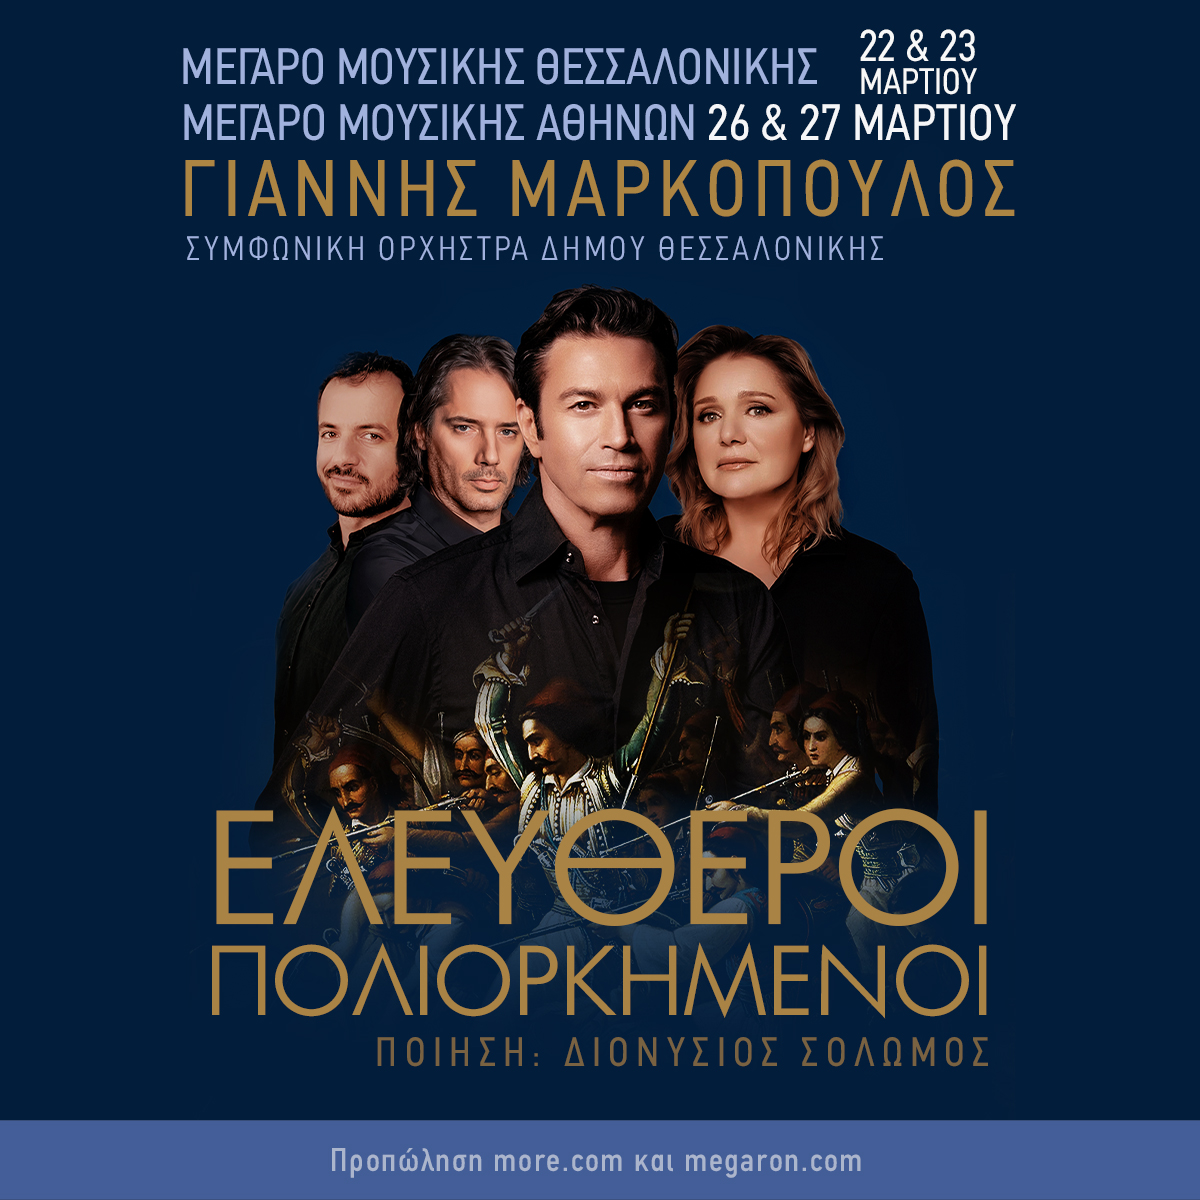 "Οι  Ελεύθεροι  Πολιορκημένοι" στο Μέγαρο Μουσικής Θεσσαλονίκης & Αθηνών